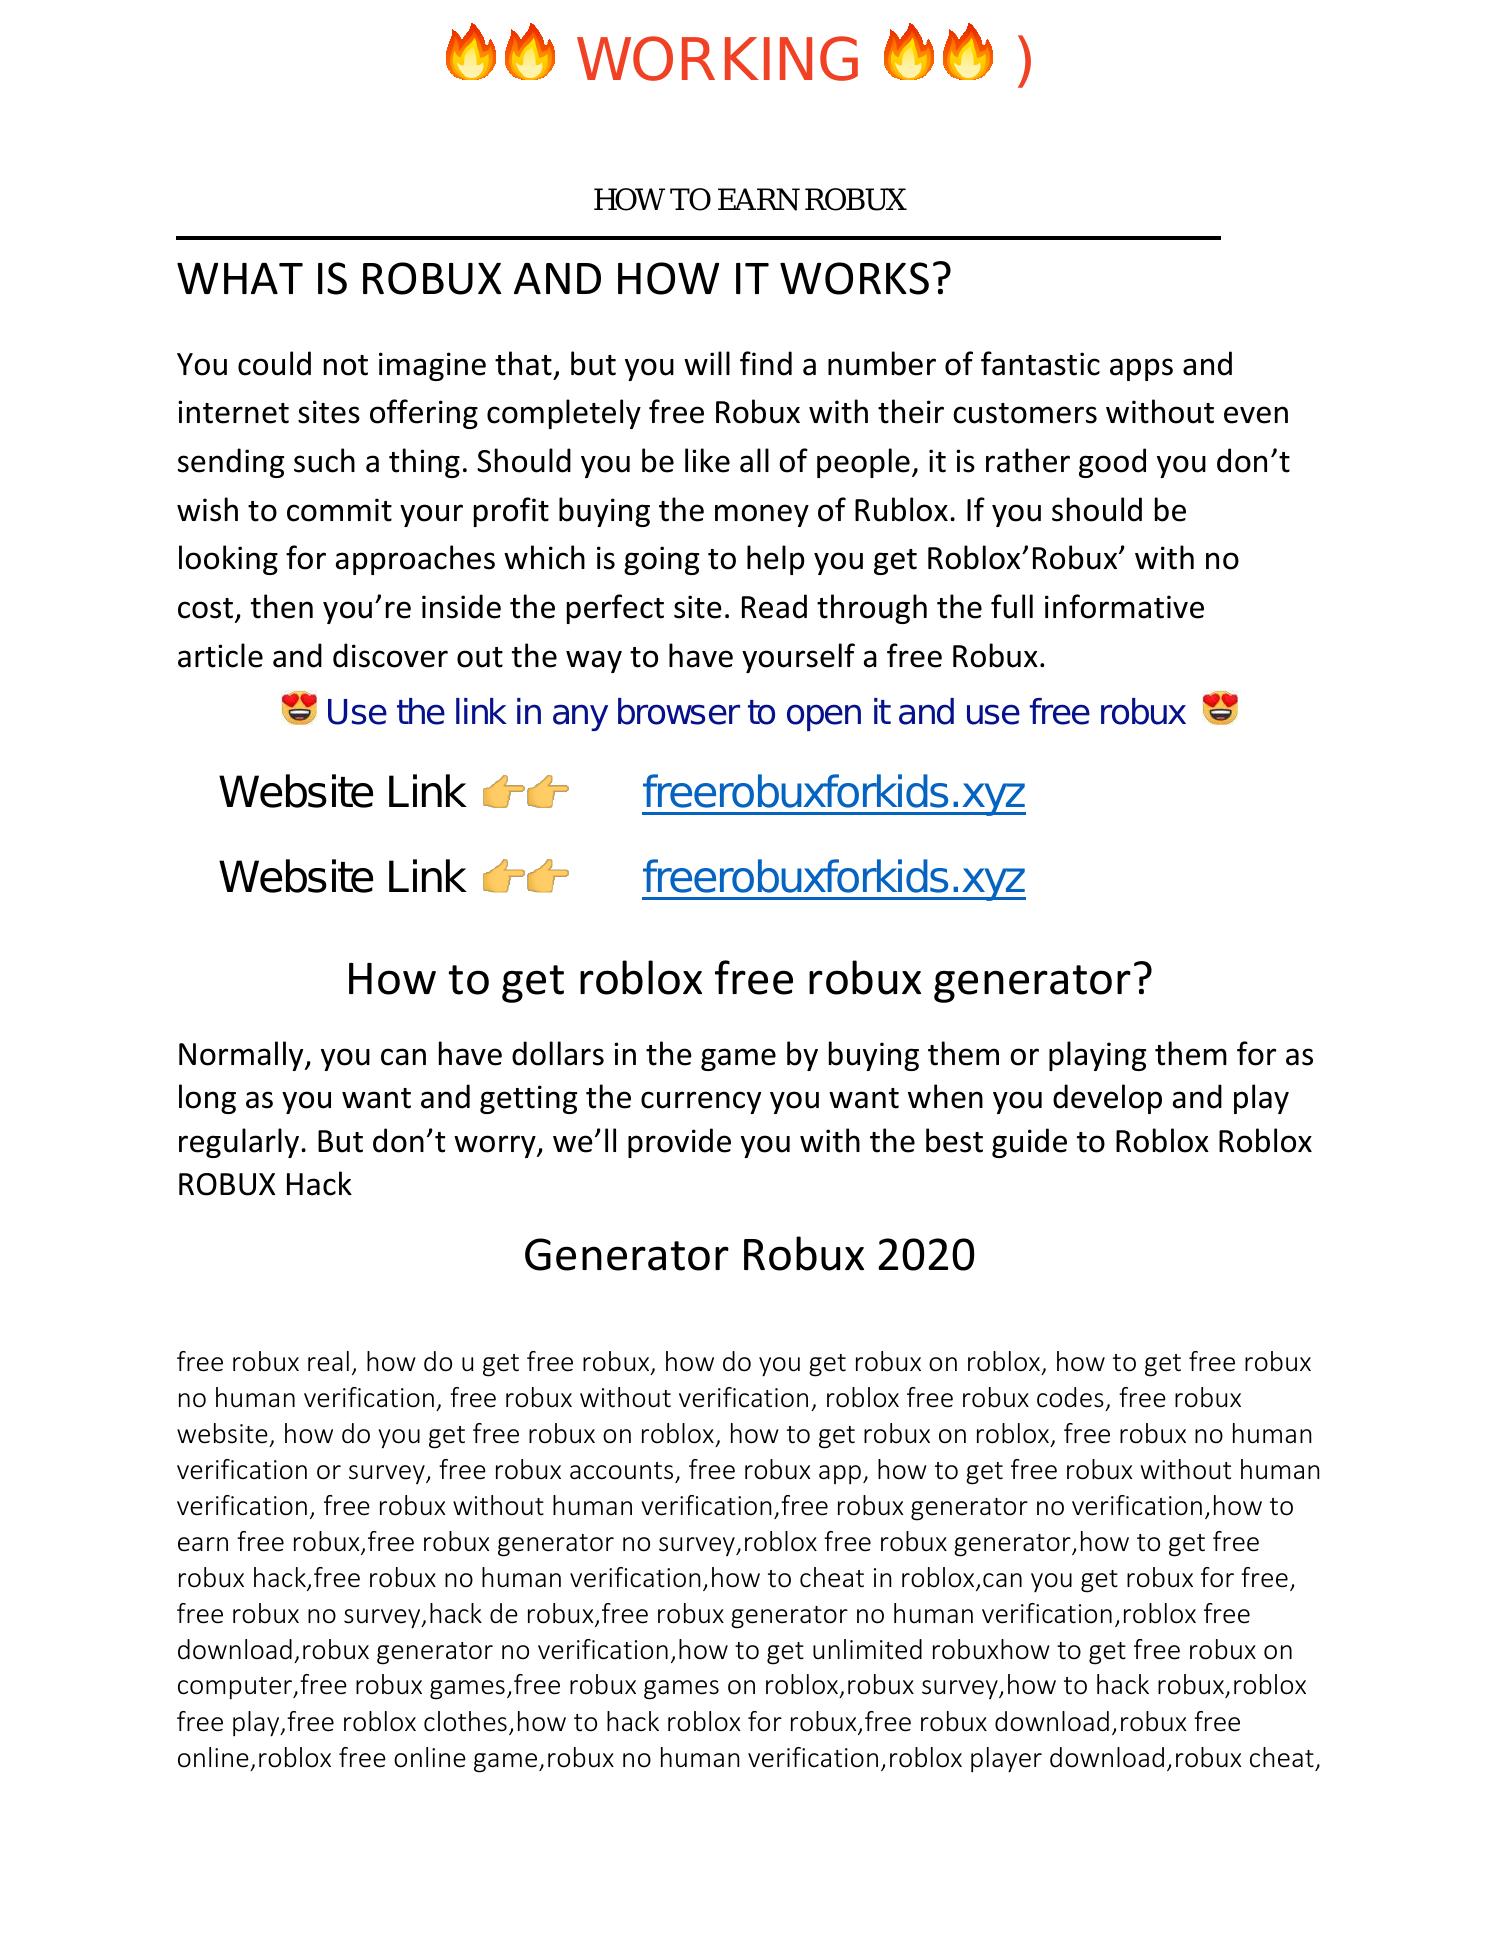 Generator Robux E Hack